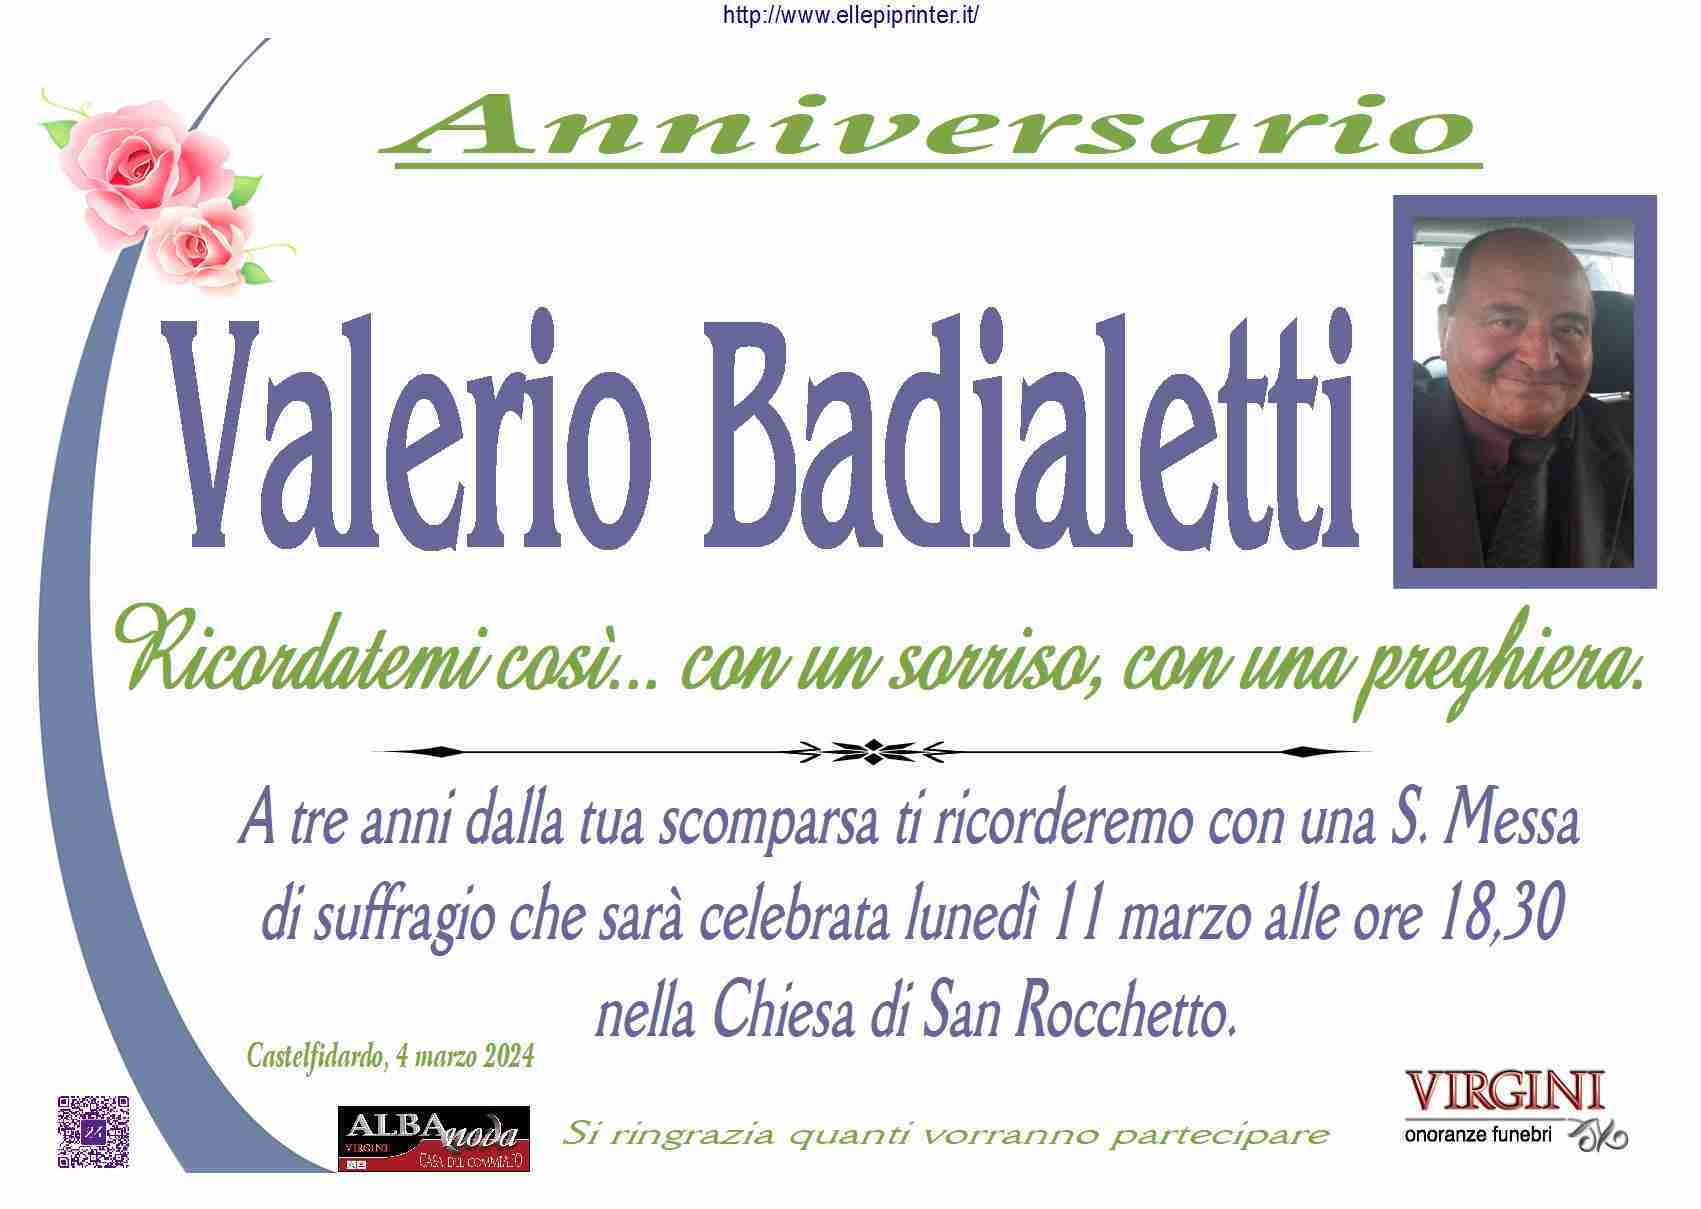 Valerio Badialetti